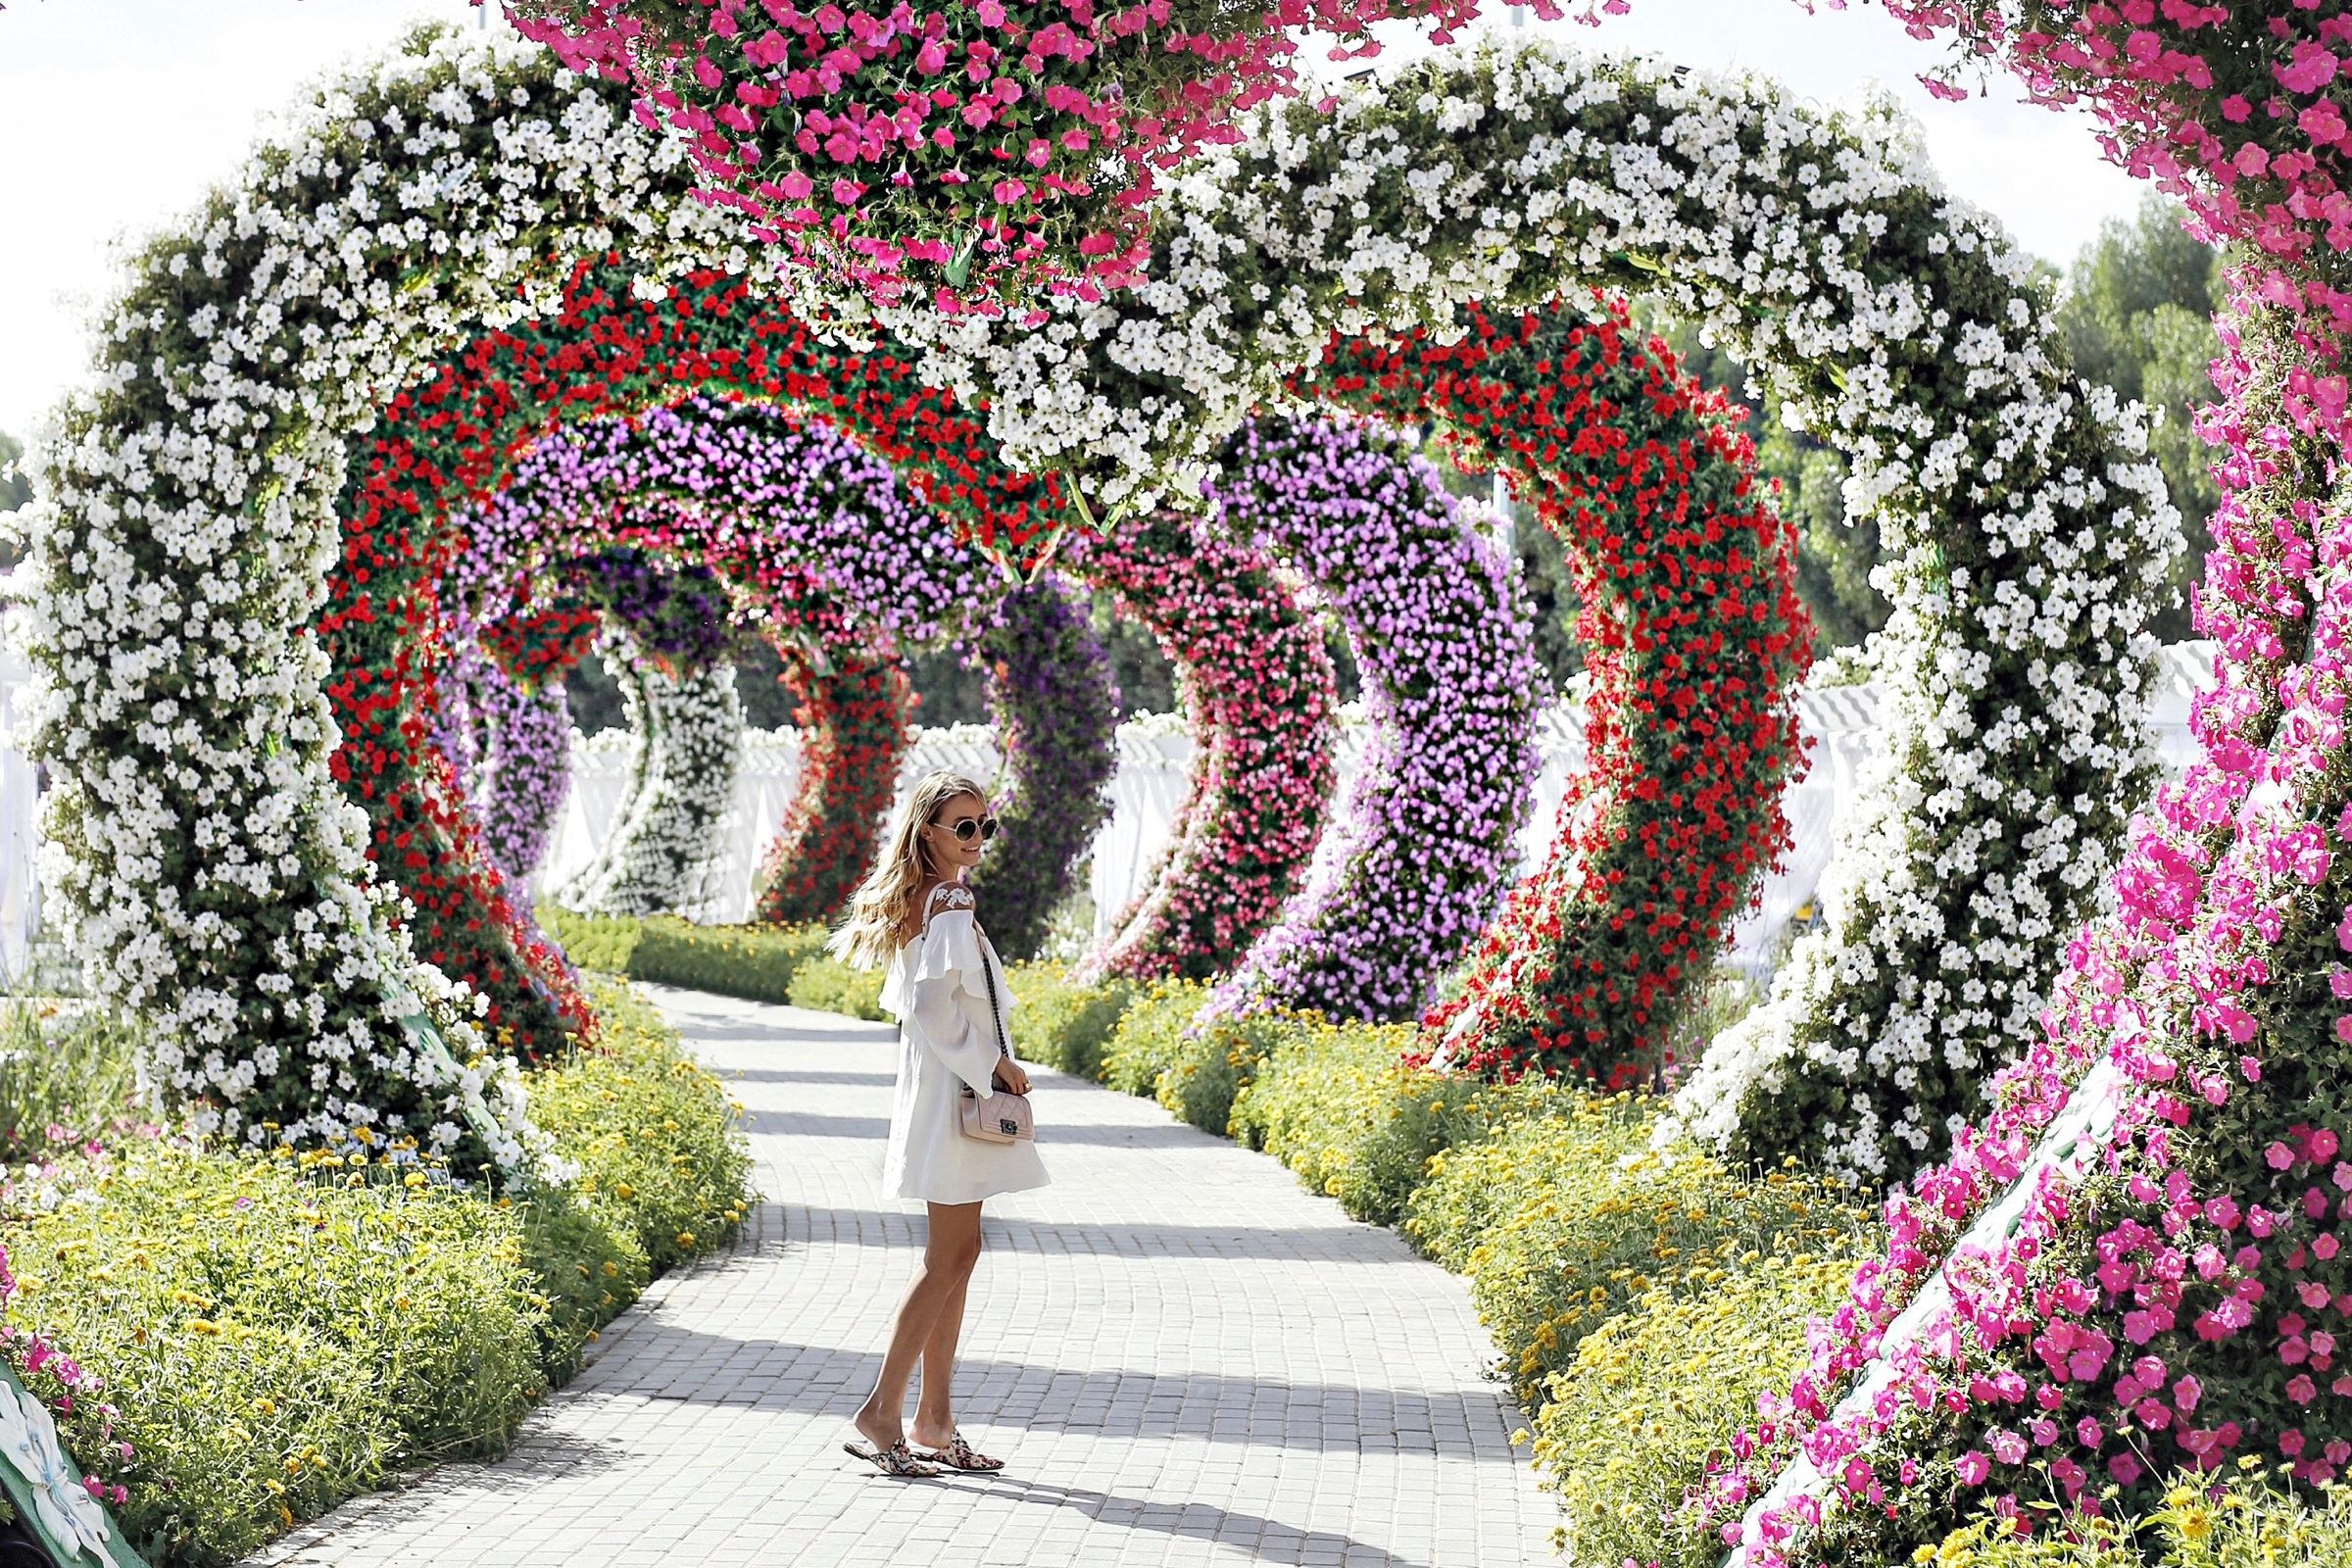 Miracle garden | Dubai